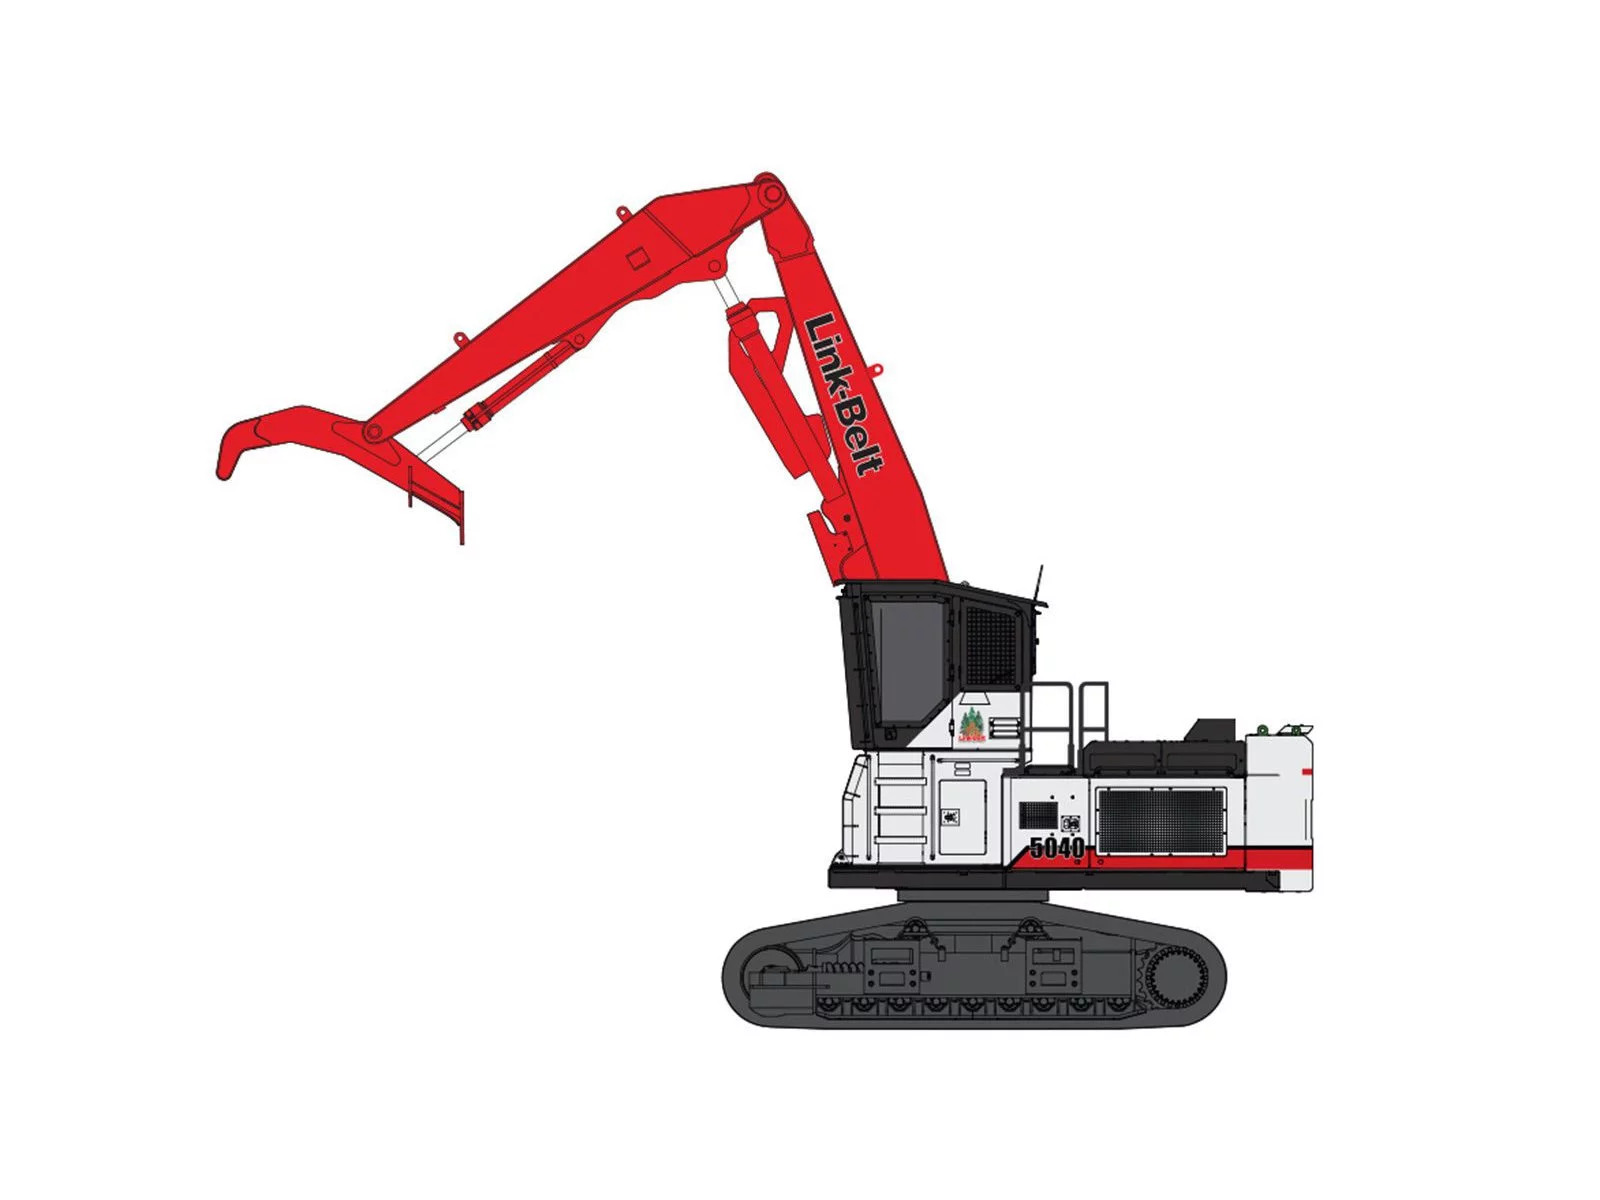 Link-Belt excavator 5040 TL | Product Link-Belt excavator 5040 TL